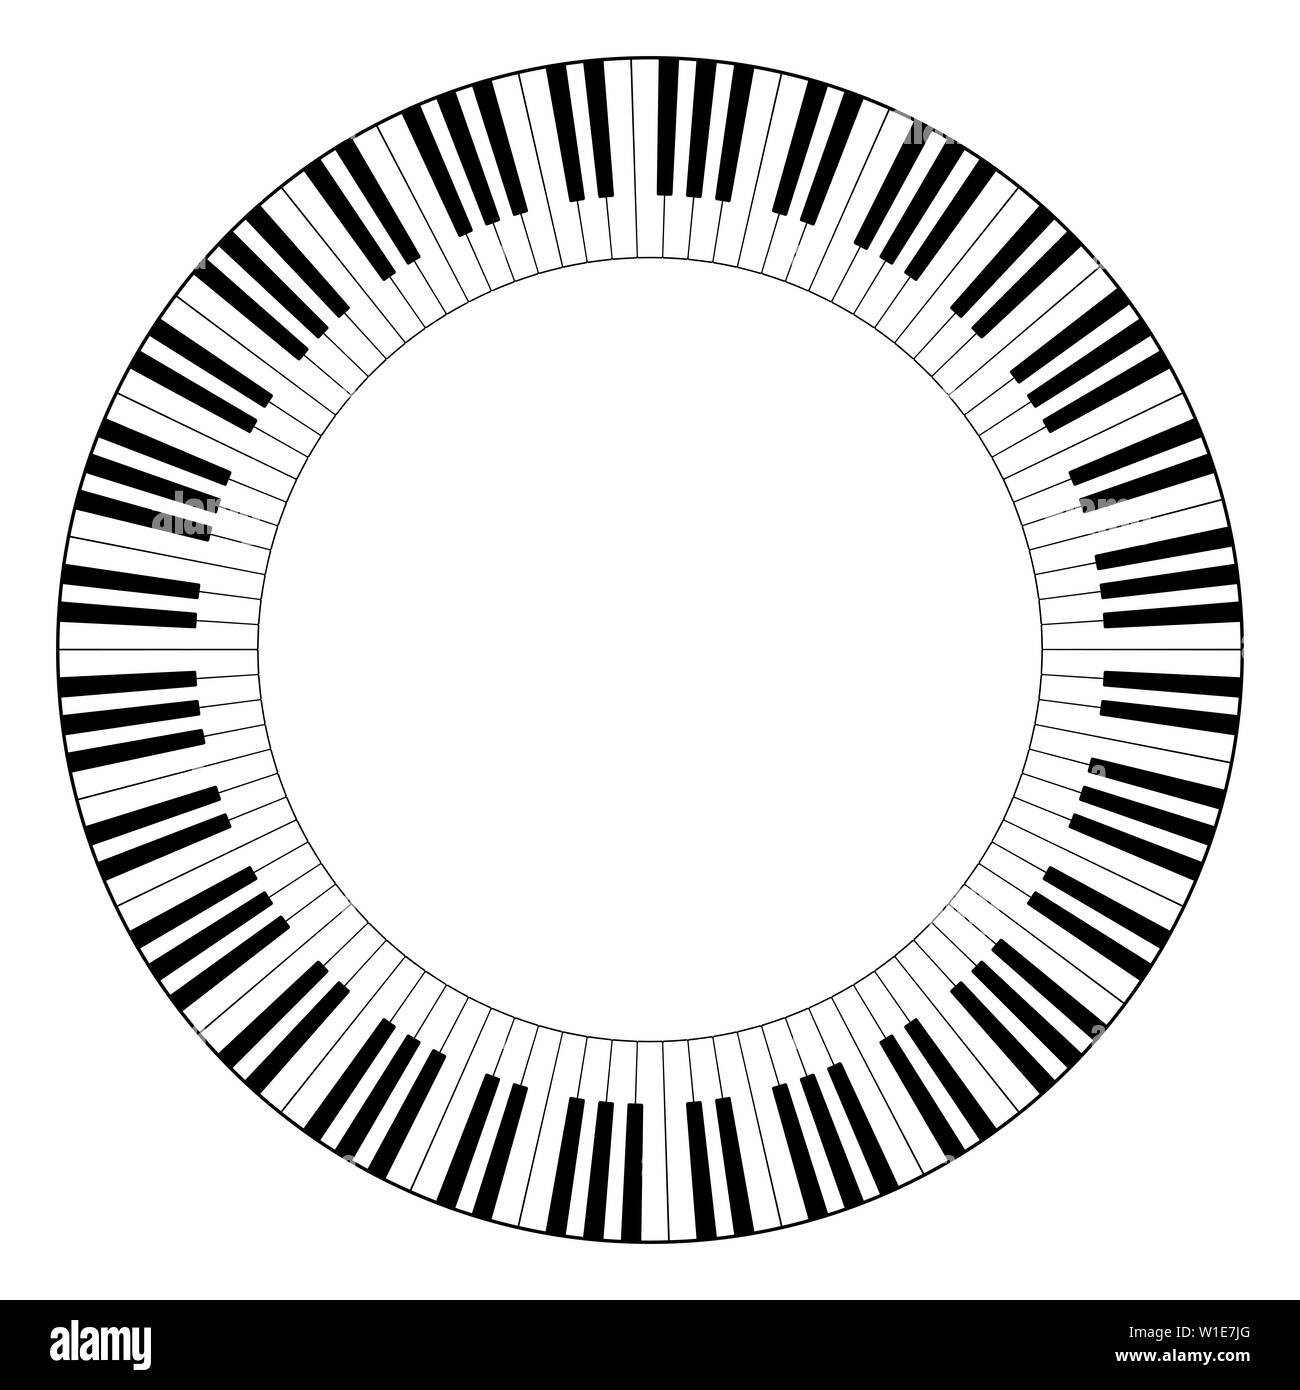 Clavier musical châssis circulaire, fait de motifs d'octave connecté.  Bordure décorative, construit à partir d'octaves, touches blanches et  noires du clavier de piano Photo Stock - Alamy